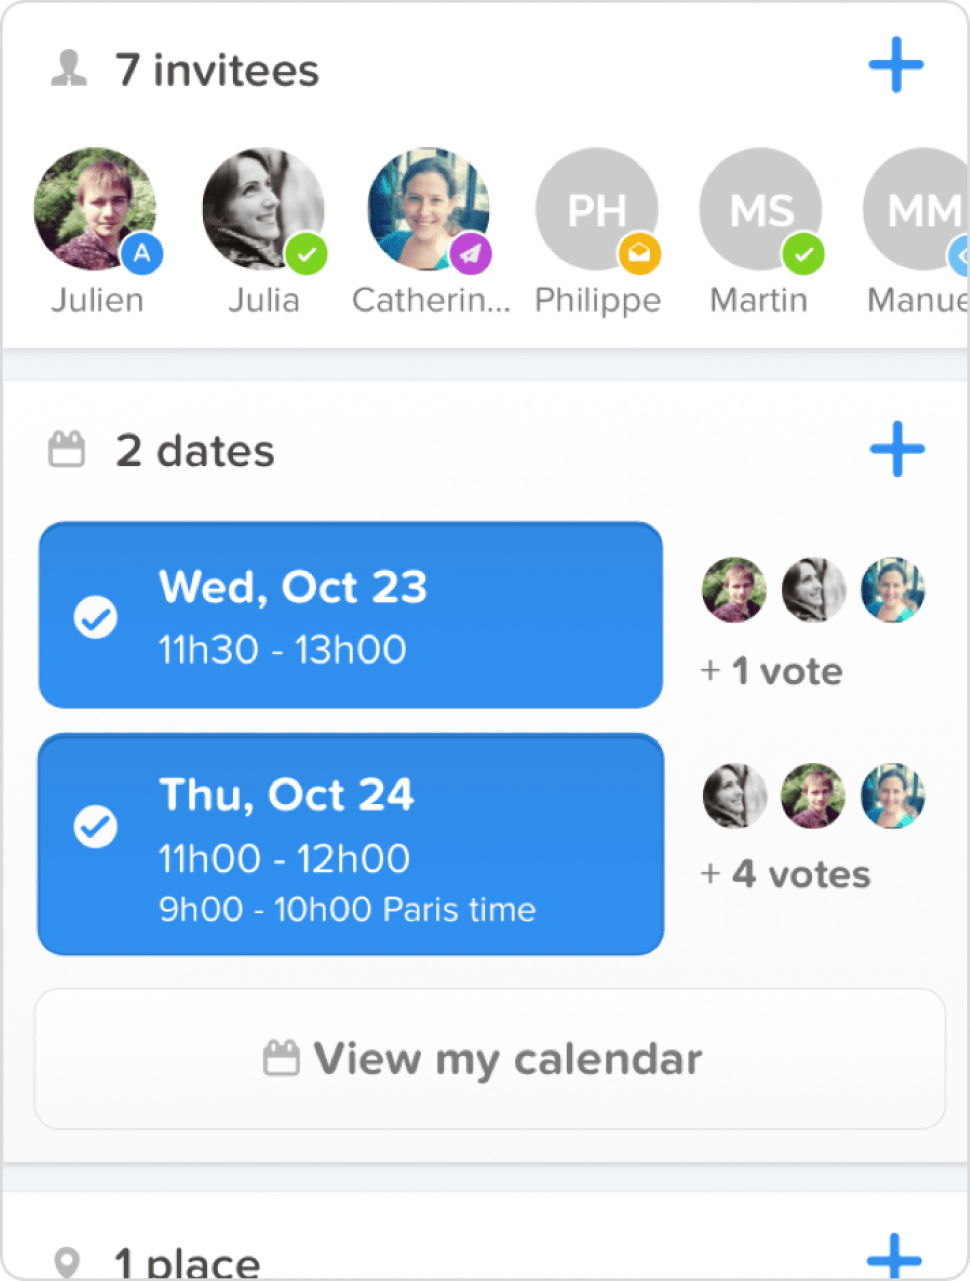 Schedule meetings